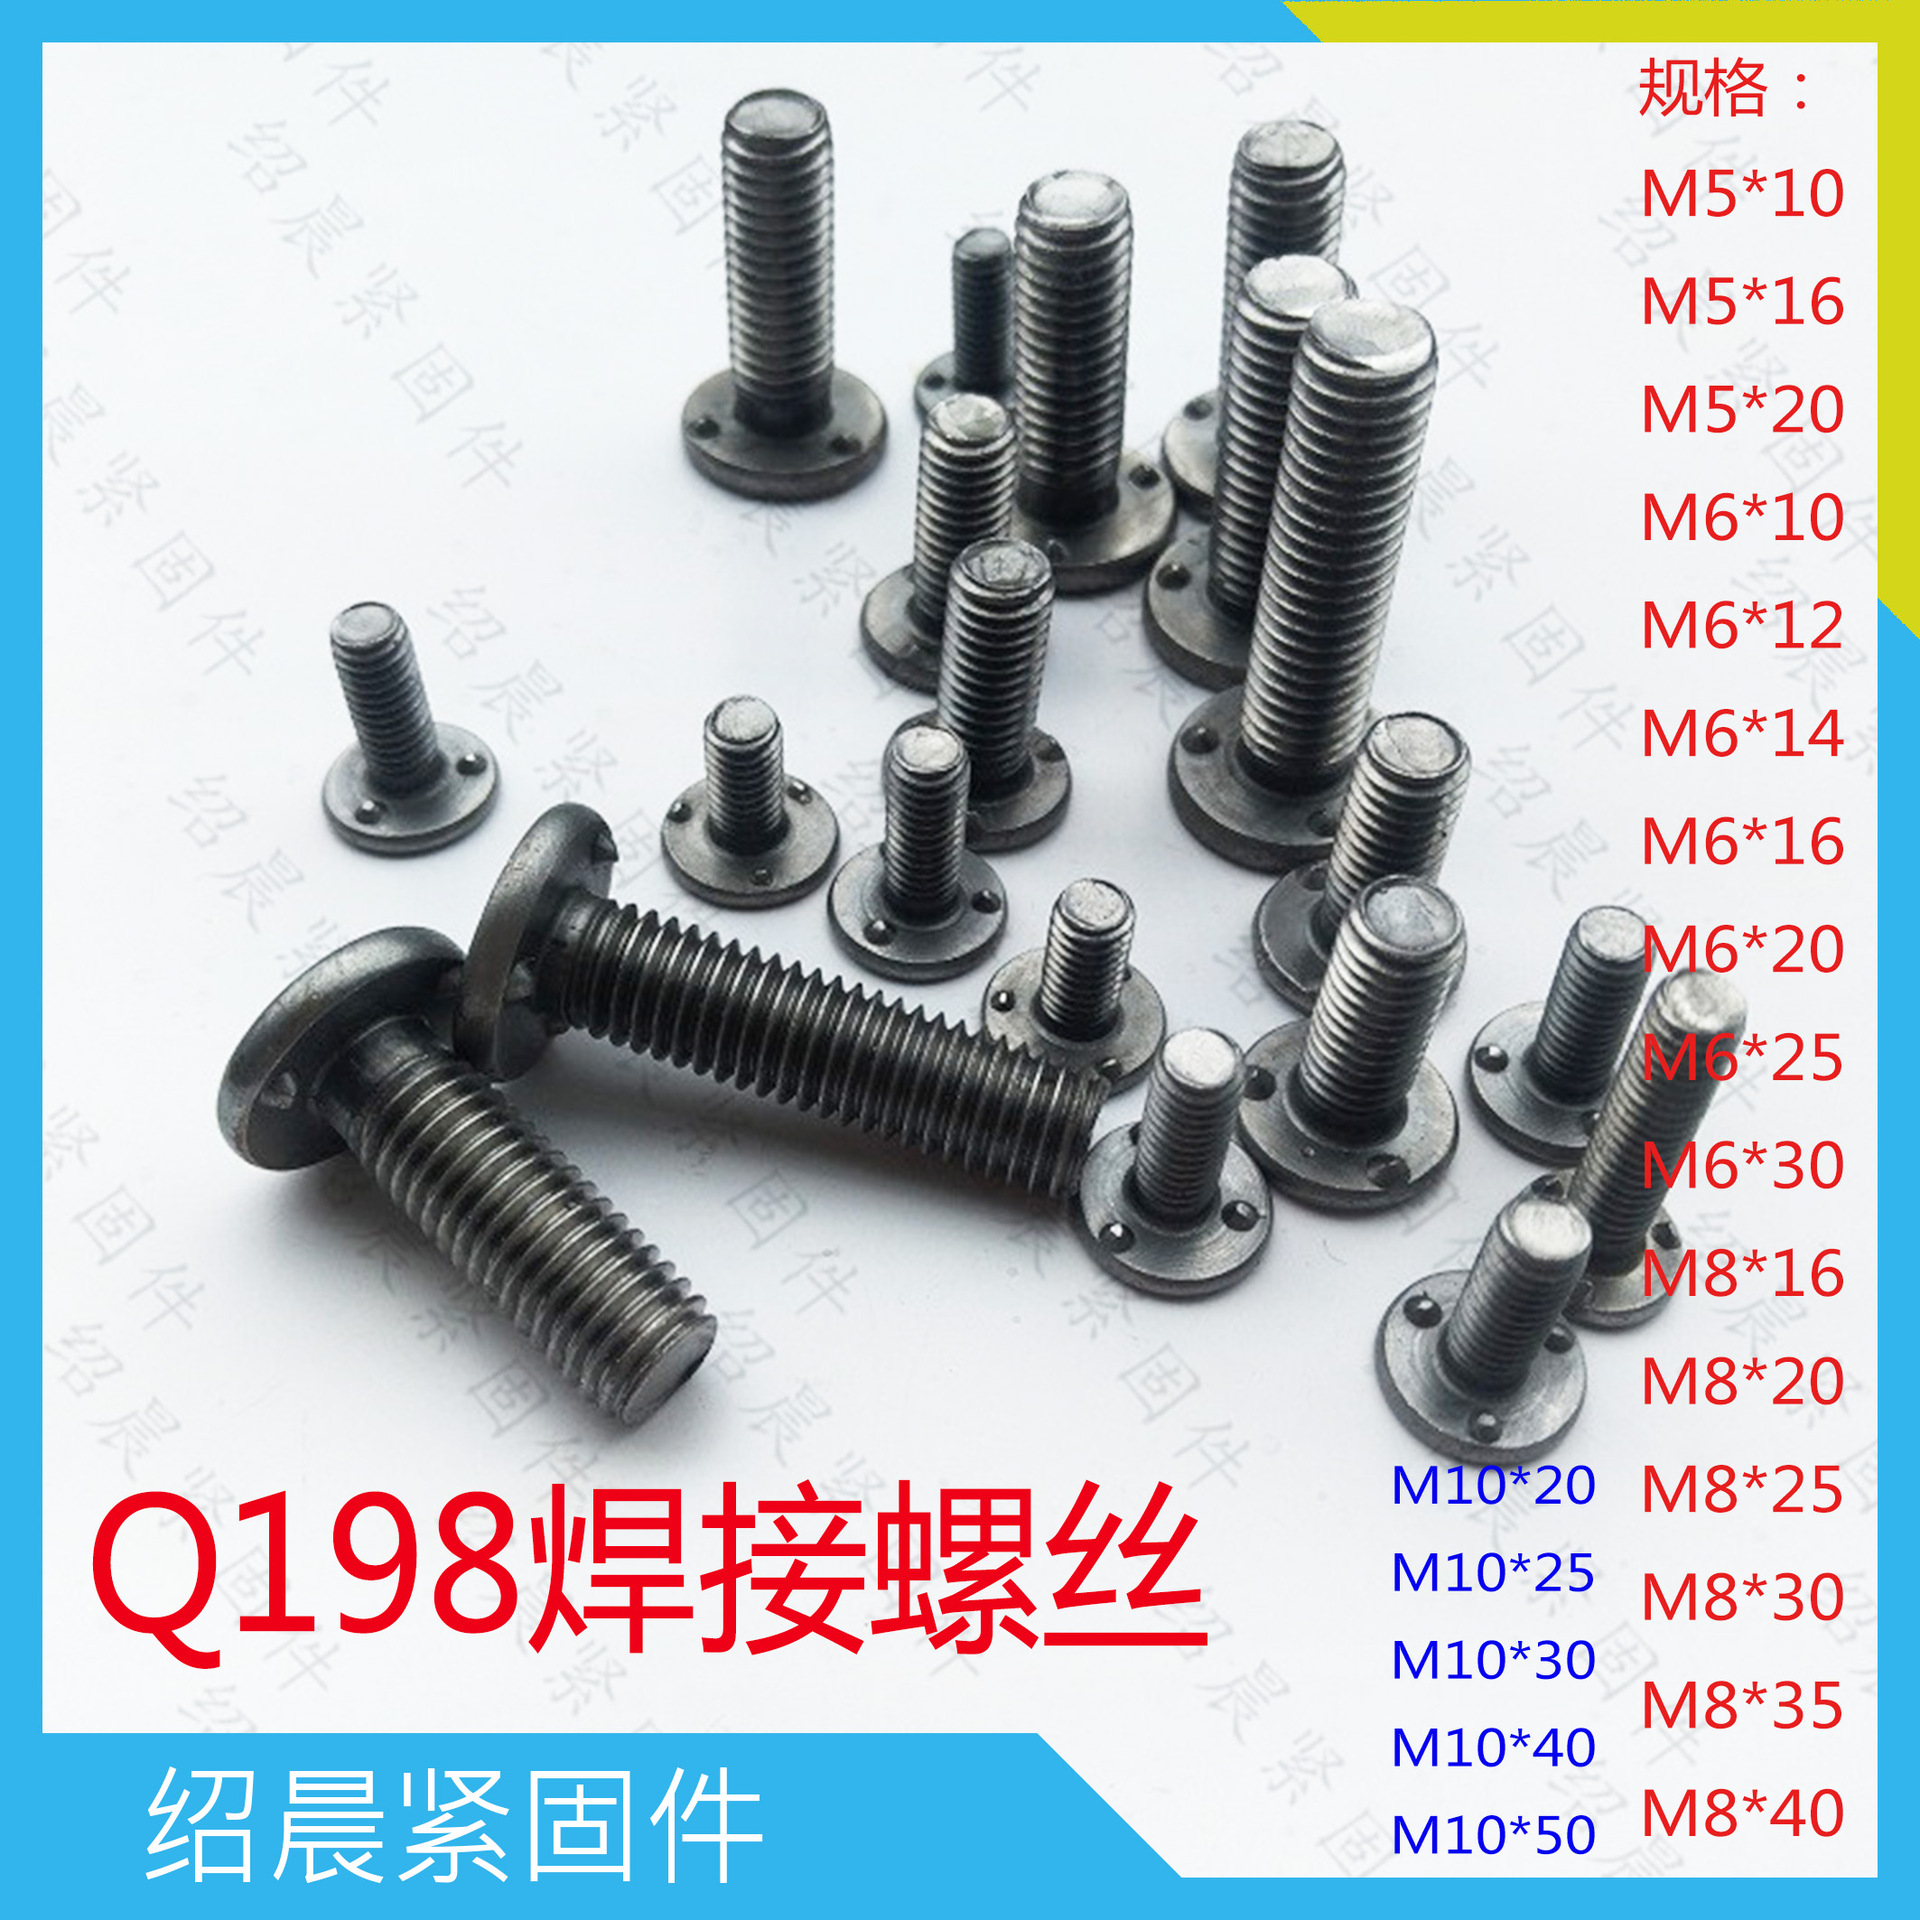 现货供应标准Q1980830承面凸焊螺栓焊接螺丝点焊螺丝